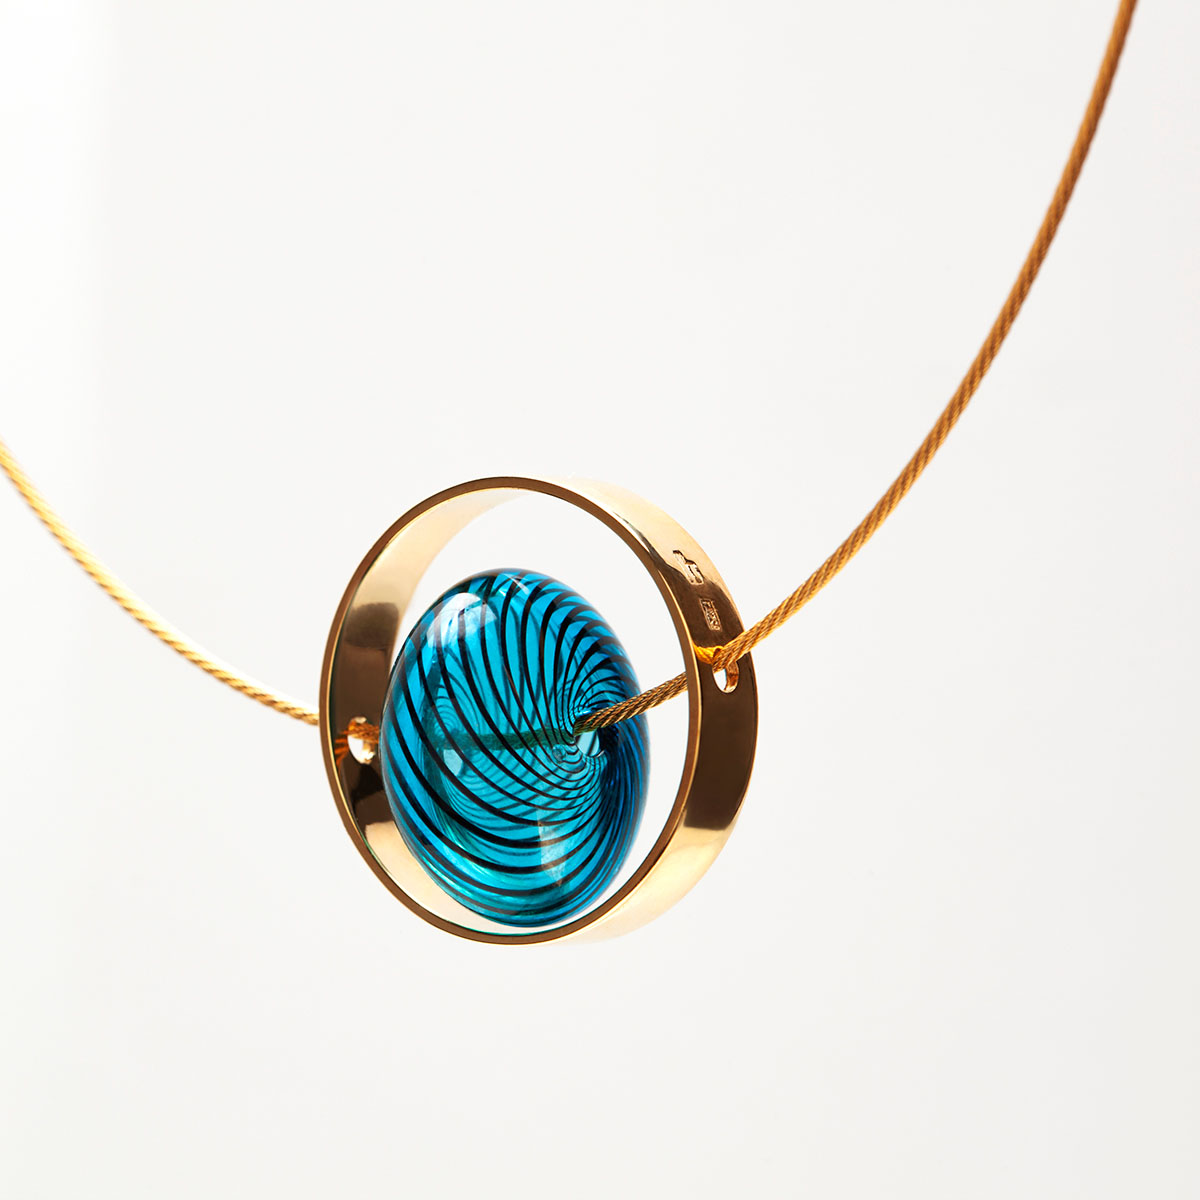 Collar artesanal Xar en plata 925 chapada en oro de 18k, vidrio azul y cable de acero galvanizado dorado diseñado por Belen Bajo